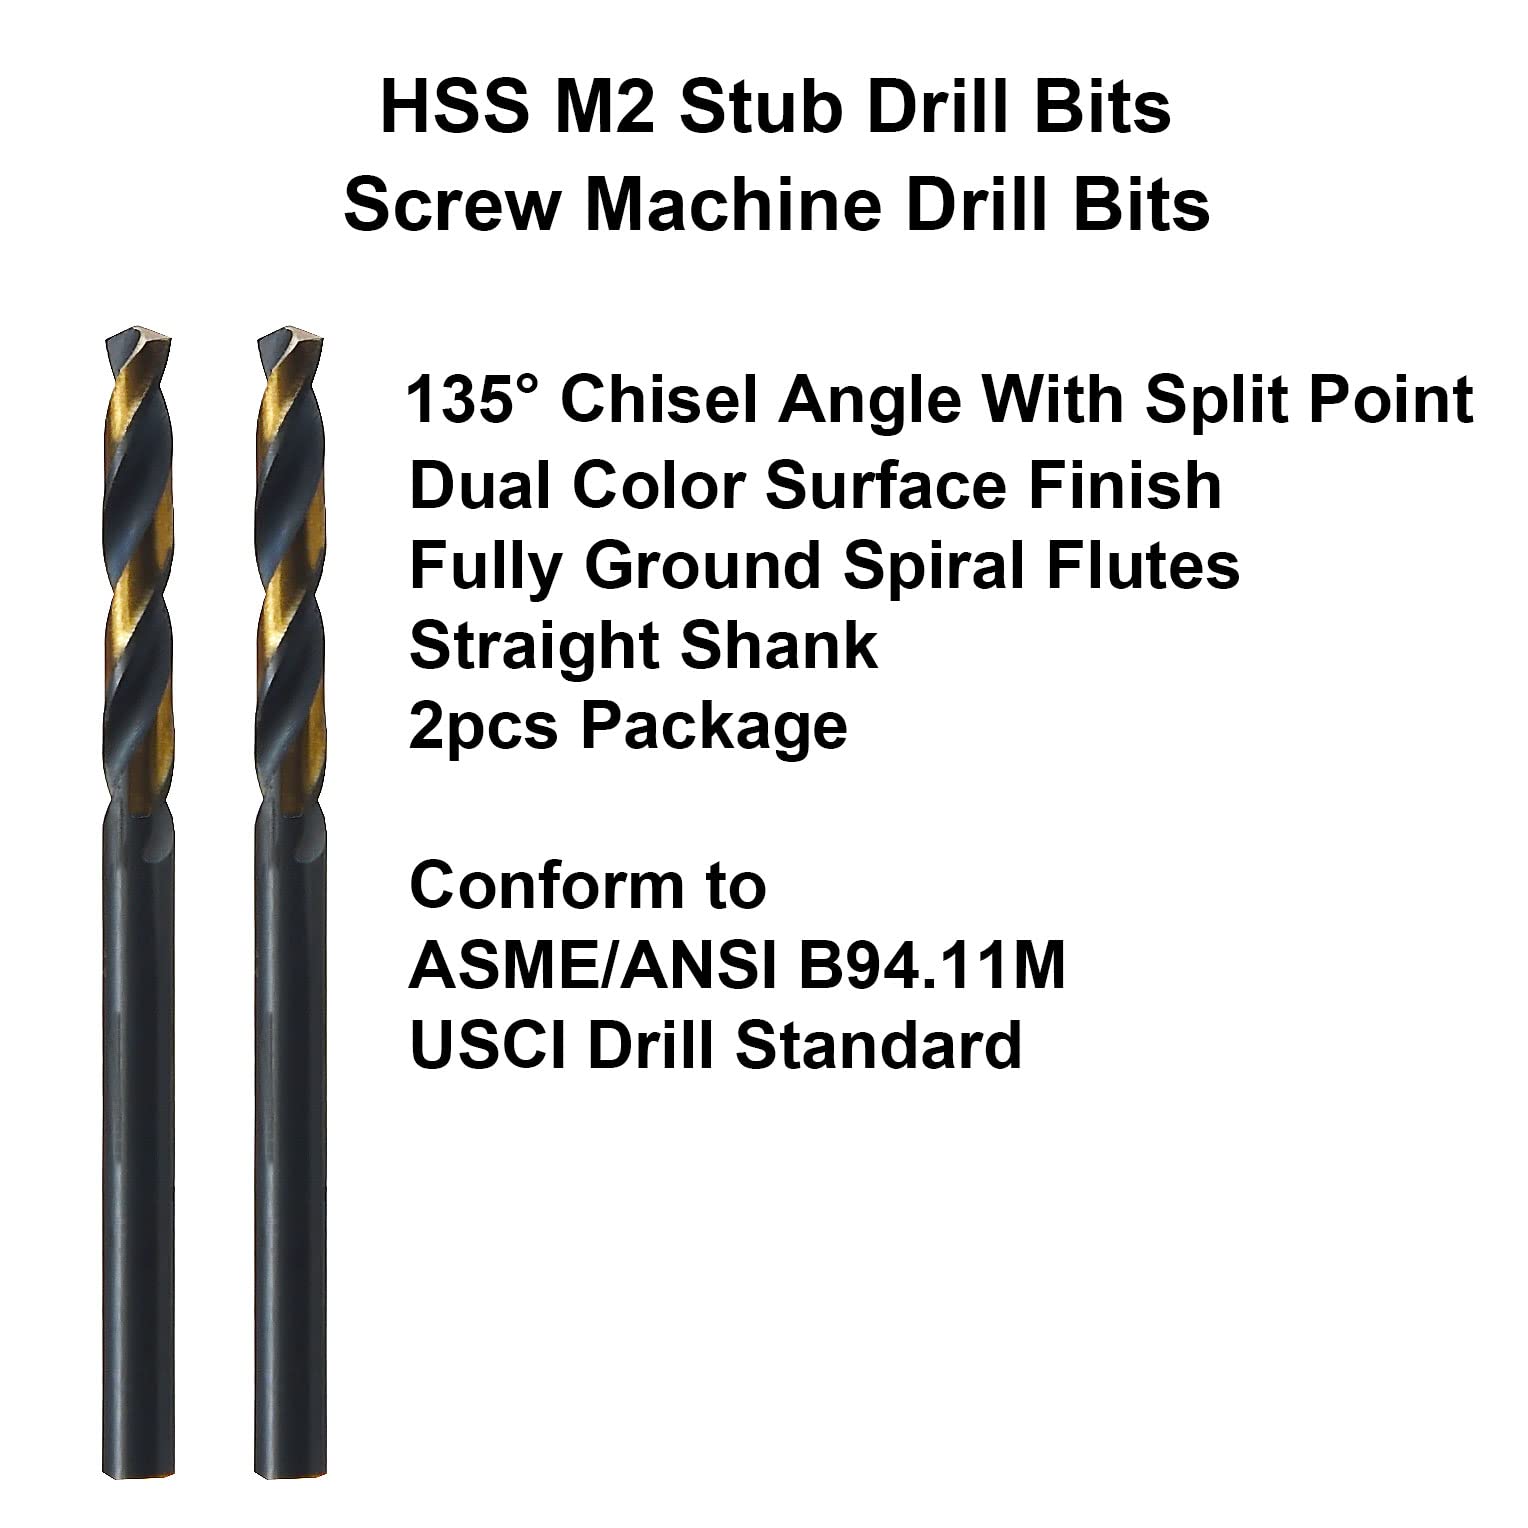 MAXTOOL 3/32" 2pcs Identical Screw Machine Drills HSS M2 Twist Stub Drill Bits Black & Bronze Fully Ground Straight Shank Short Drills; SMF02H10R06P2